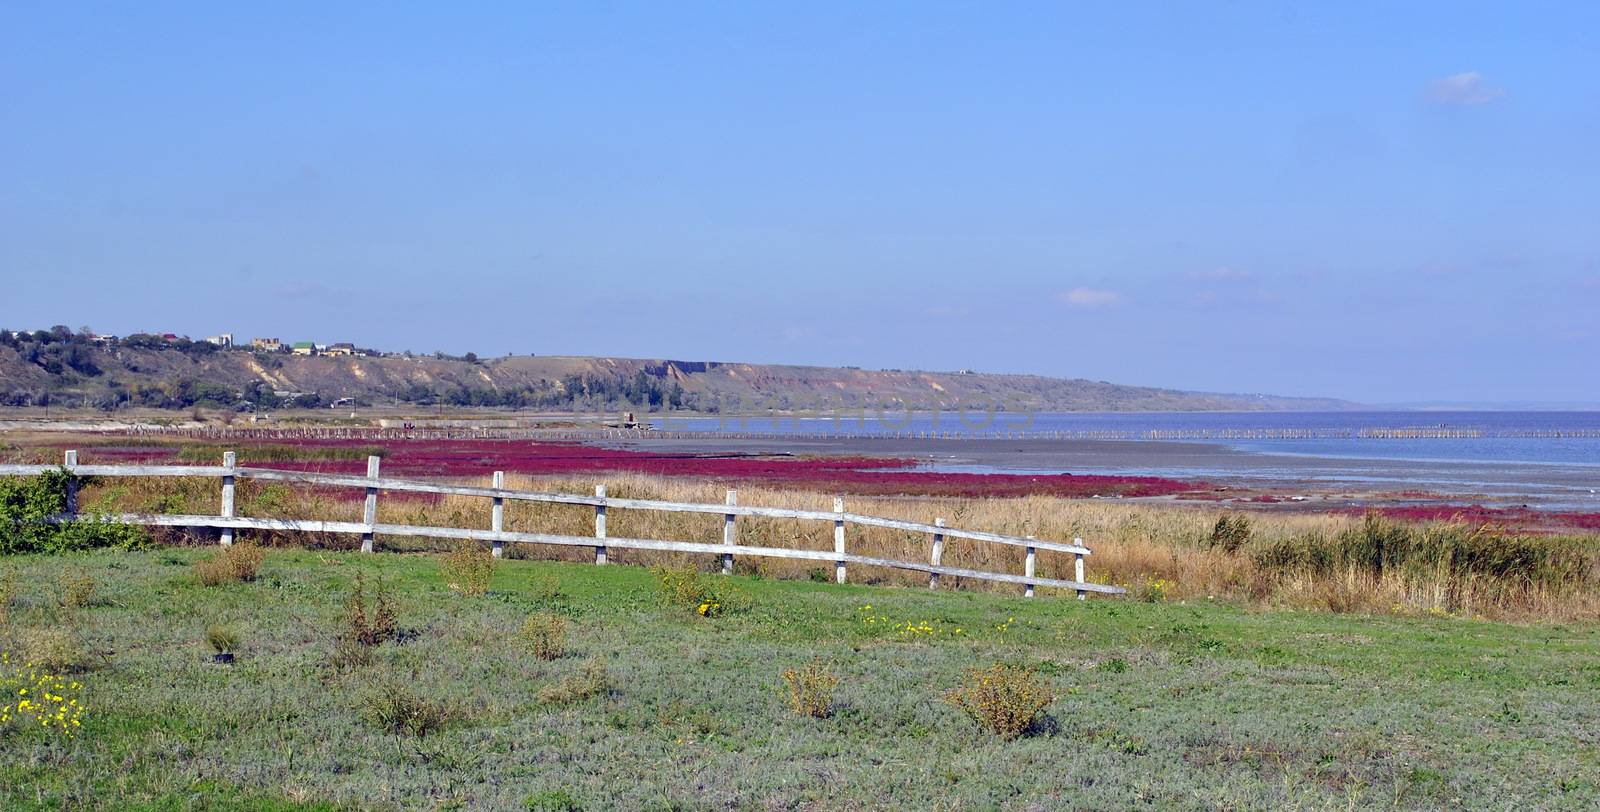 Kuyalnik estuary near Odessa in Ukraine